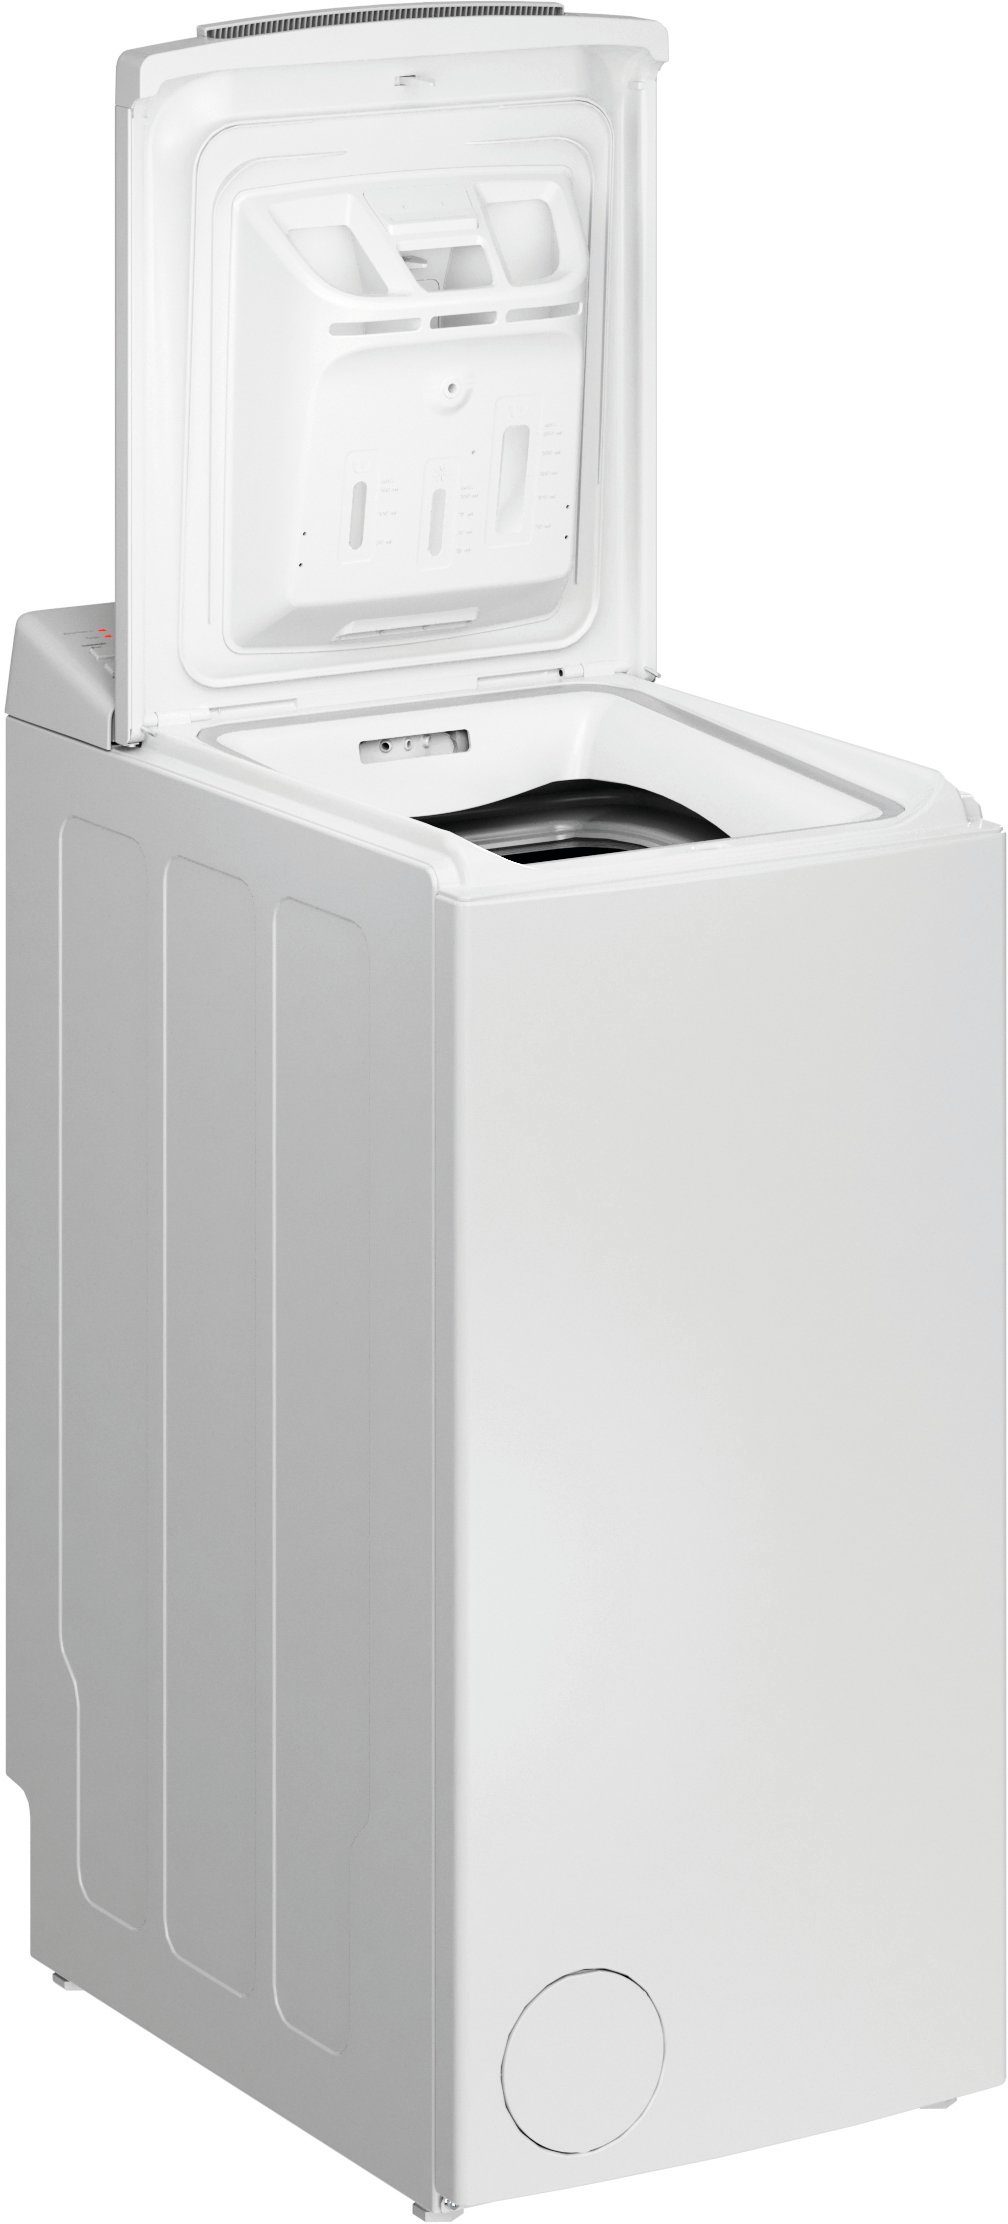 BAUKNECHT Waschmaschine Toplader WMT Eco N, kg, 6,5 U/min Di 1200 Star 6524